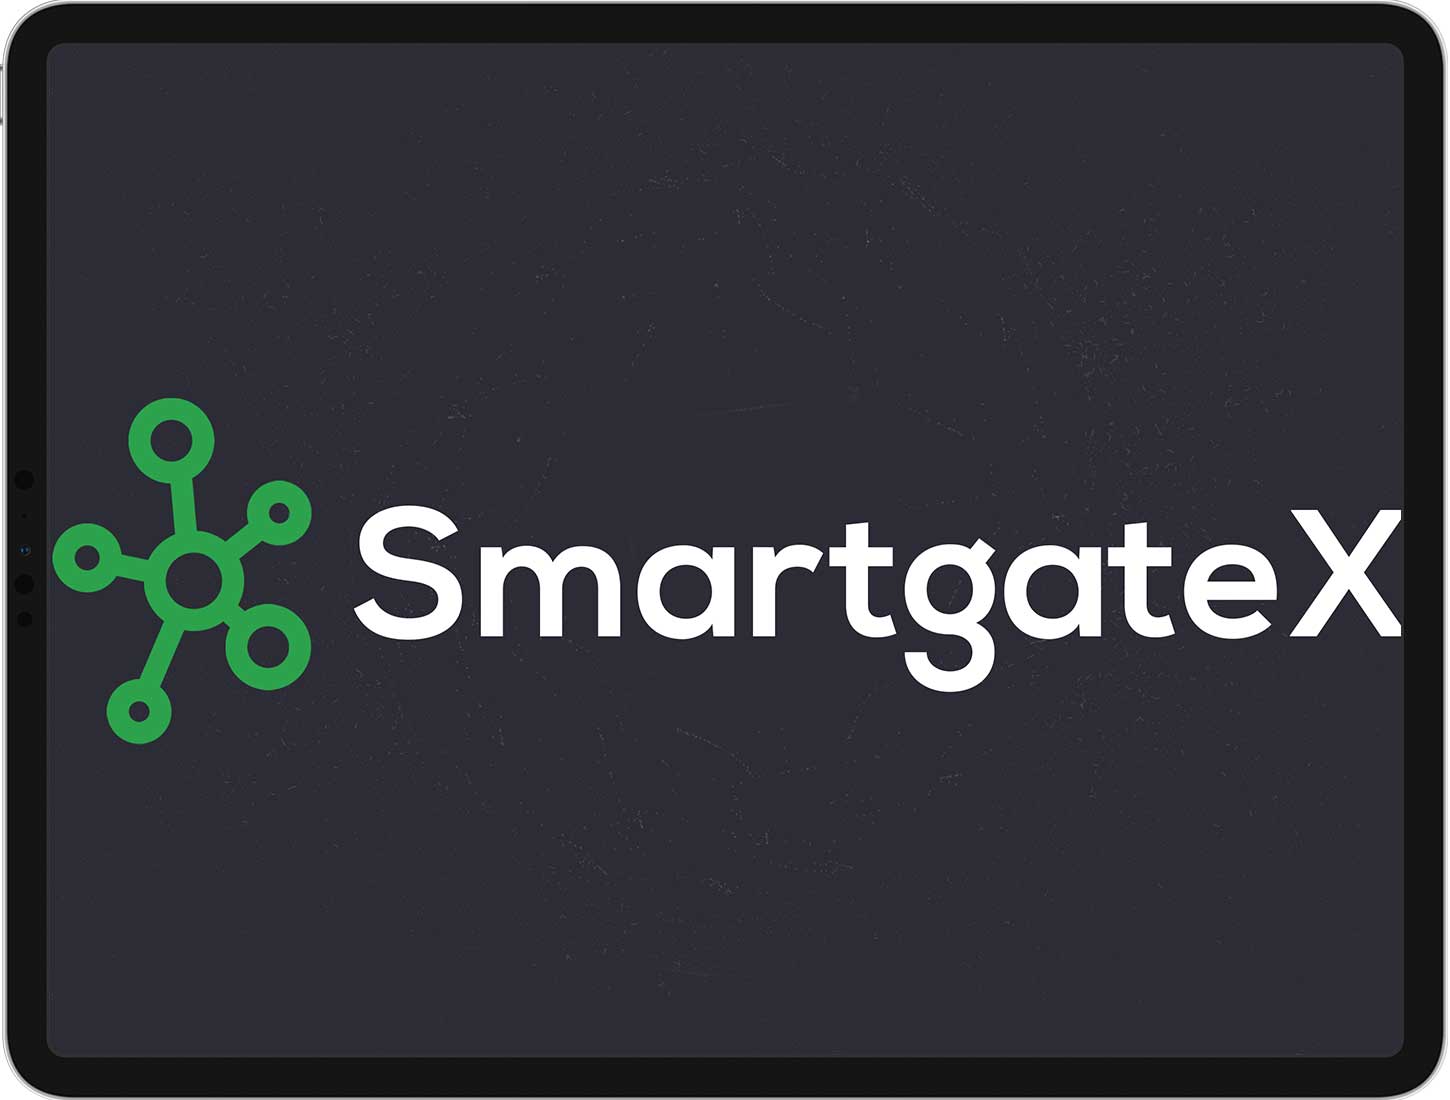 SmartgateX